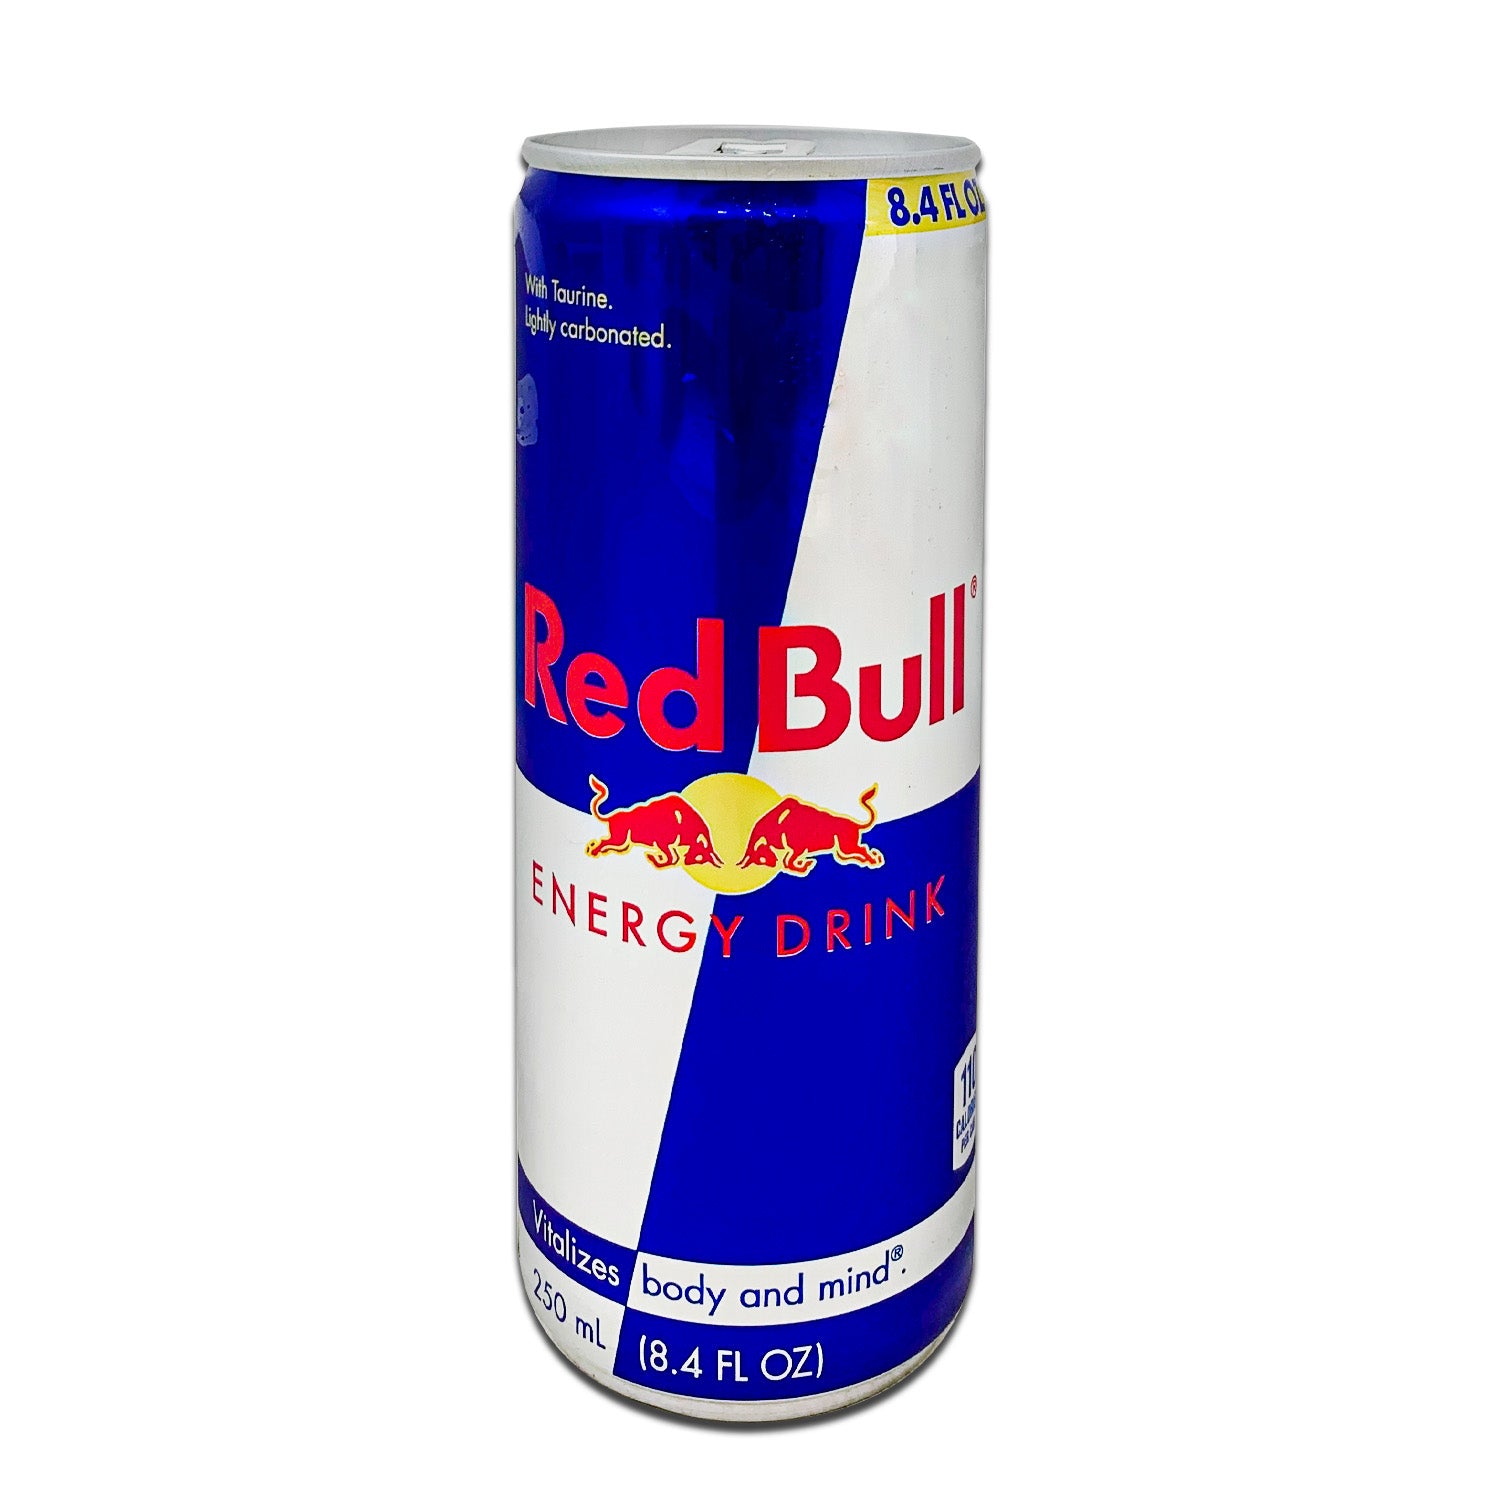 RED BULL Energy Drink, CoCo Mart fl oz (250mL) 8.4 – Island